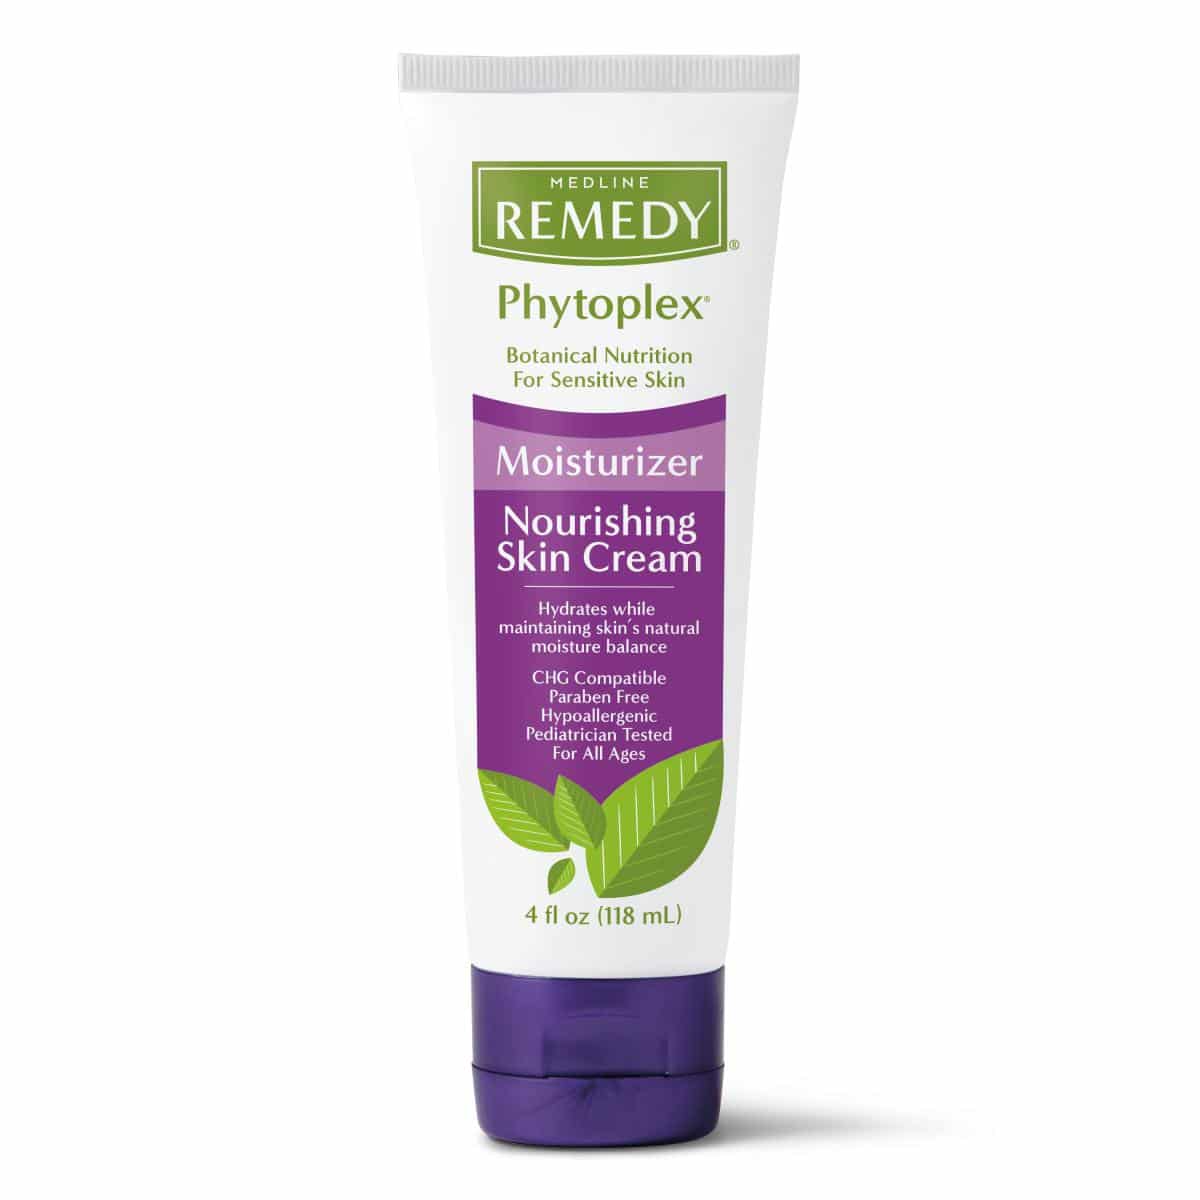 Medline Remedy Phytoplex Nourishing Skin Cream Canada | Medline MSC0924004